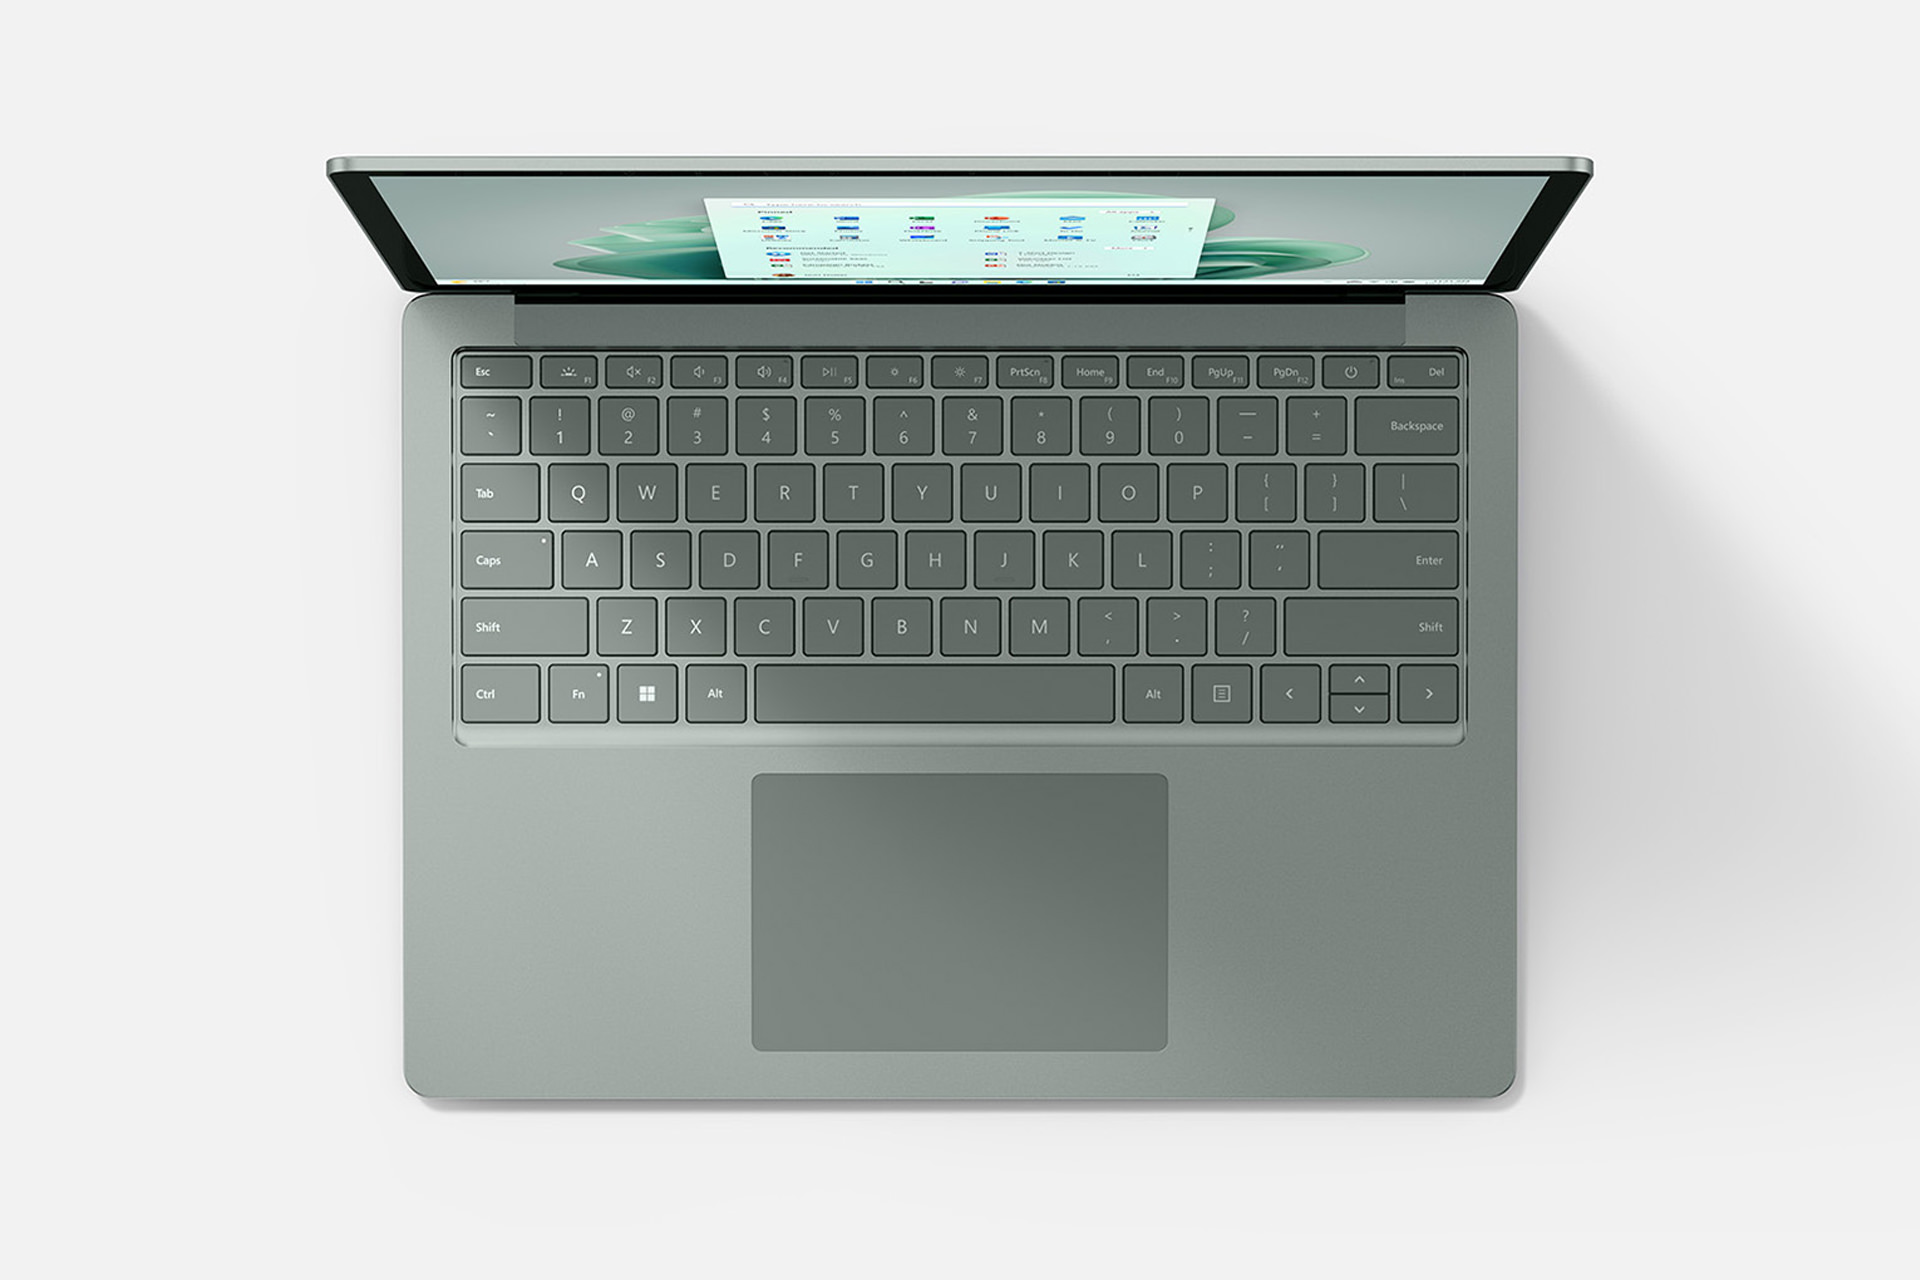 سرفیس لپ تاپ ۵ مایکروسافت Surface Laptop 5 سبز از نمای بالا